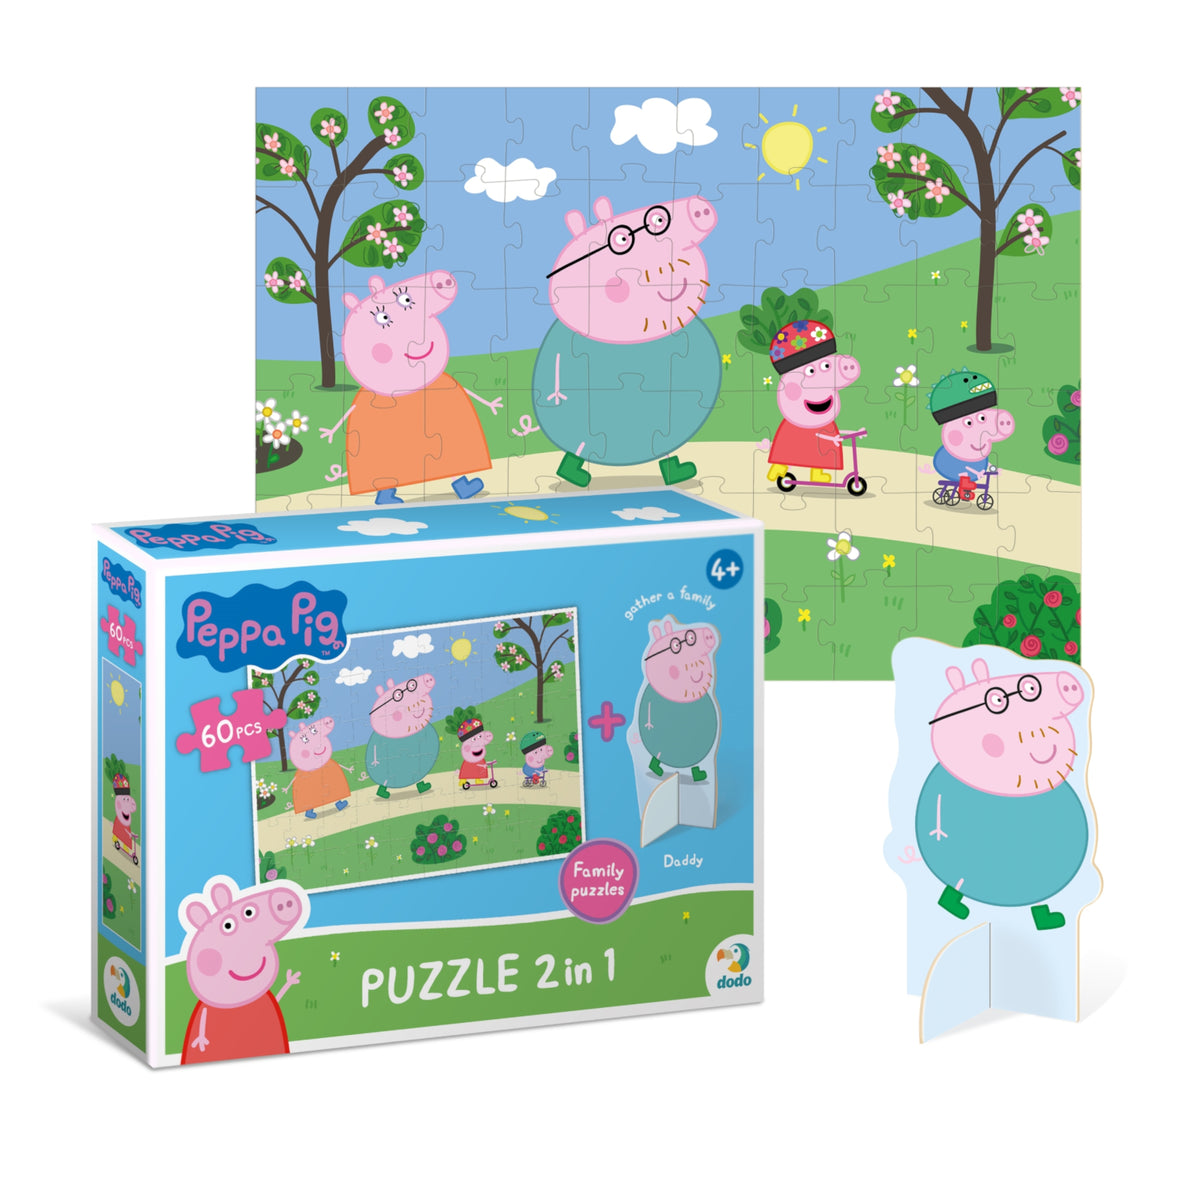 DODO Puzzle mit Spielfigur Peppa Pig Spaziergang 60 Teile 4J+